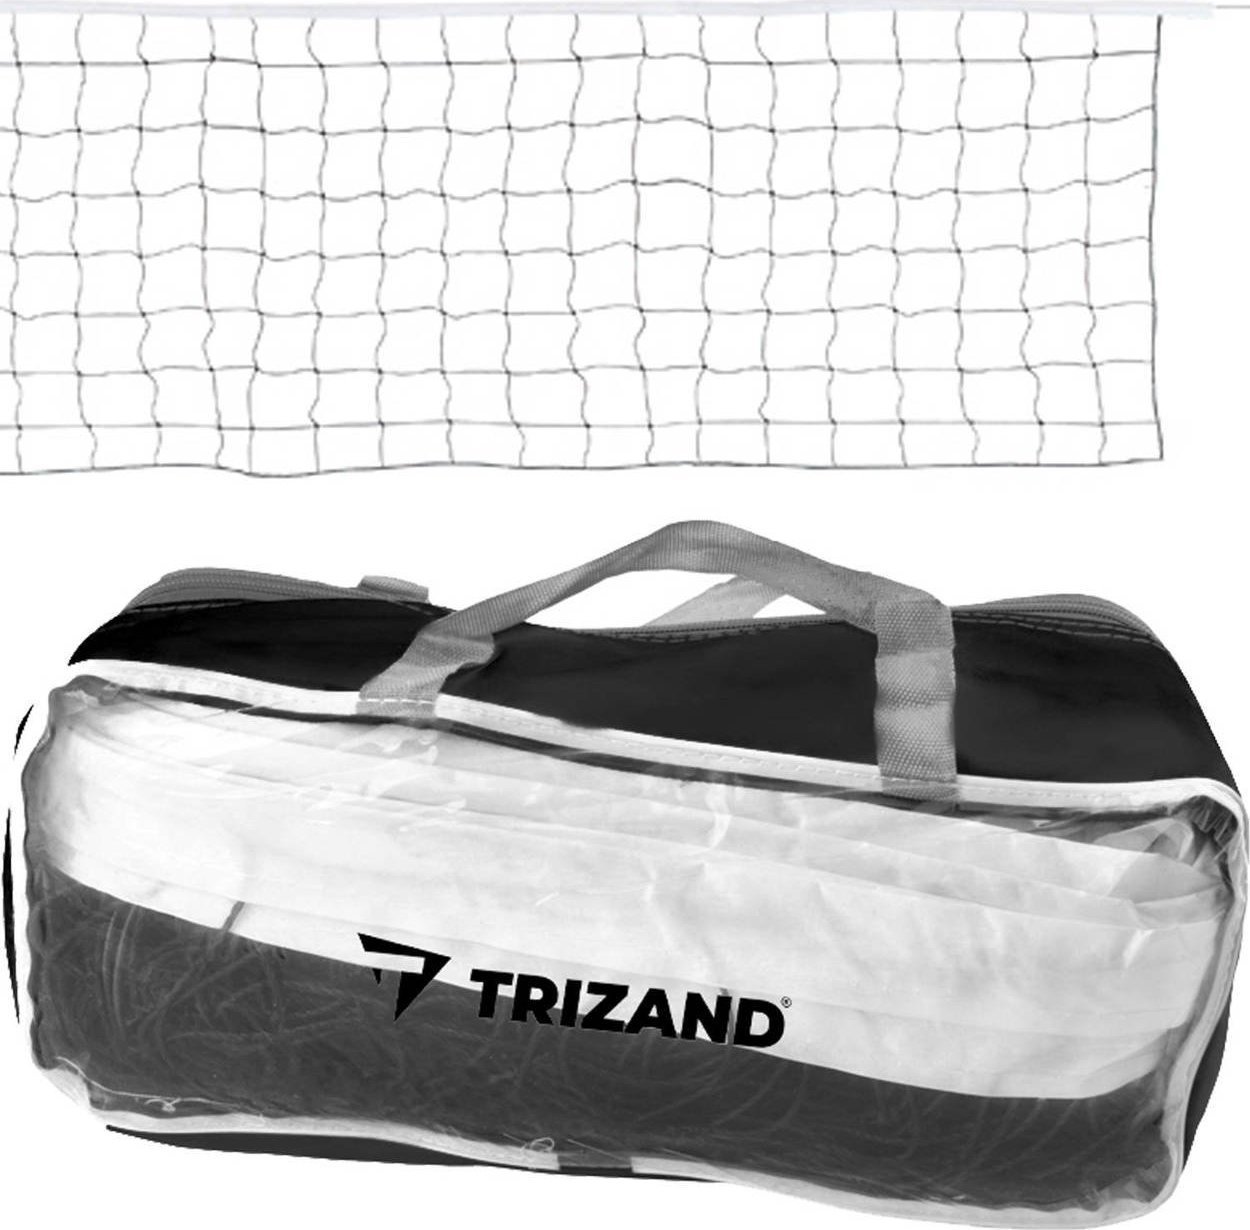 Plasa de volei Trizand + geanta